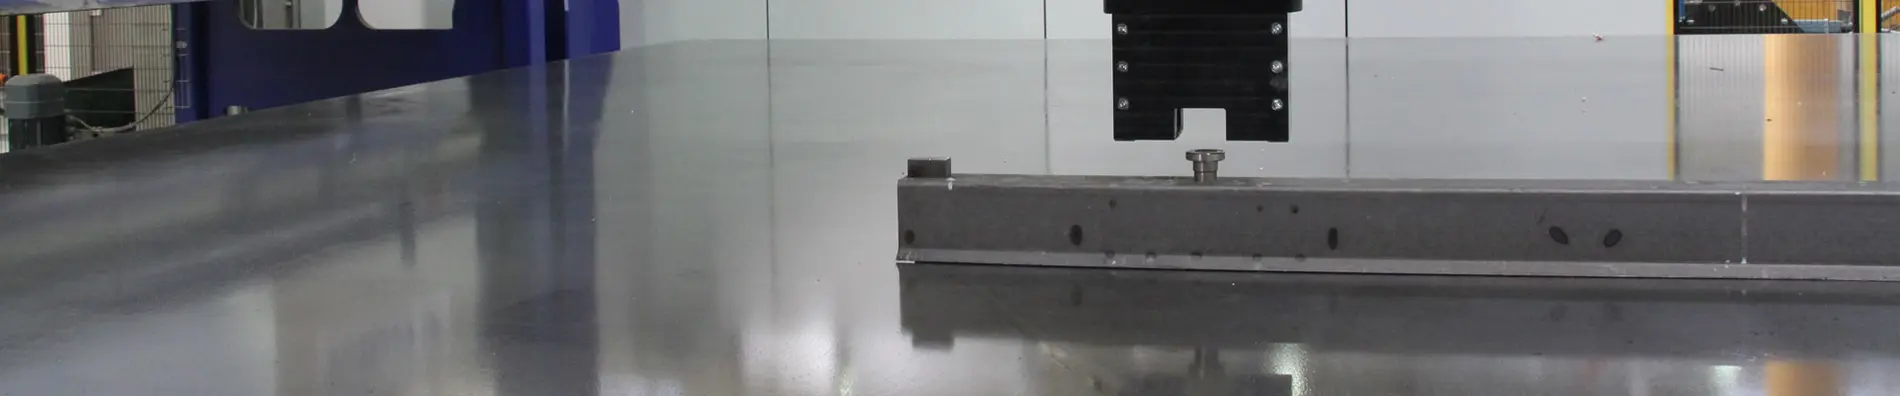 Entschalroboter löst automatisch Magneten, UniControl, Automatisierungstechnik, Automatisierung, Betonfertigteiltechnik